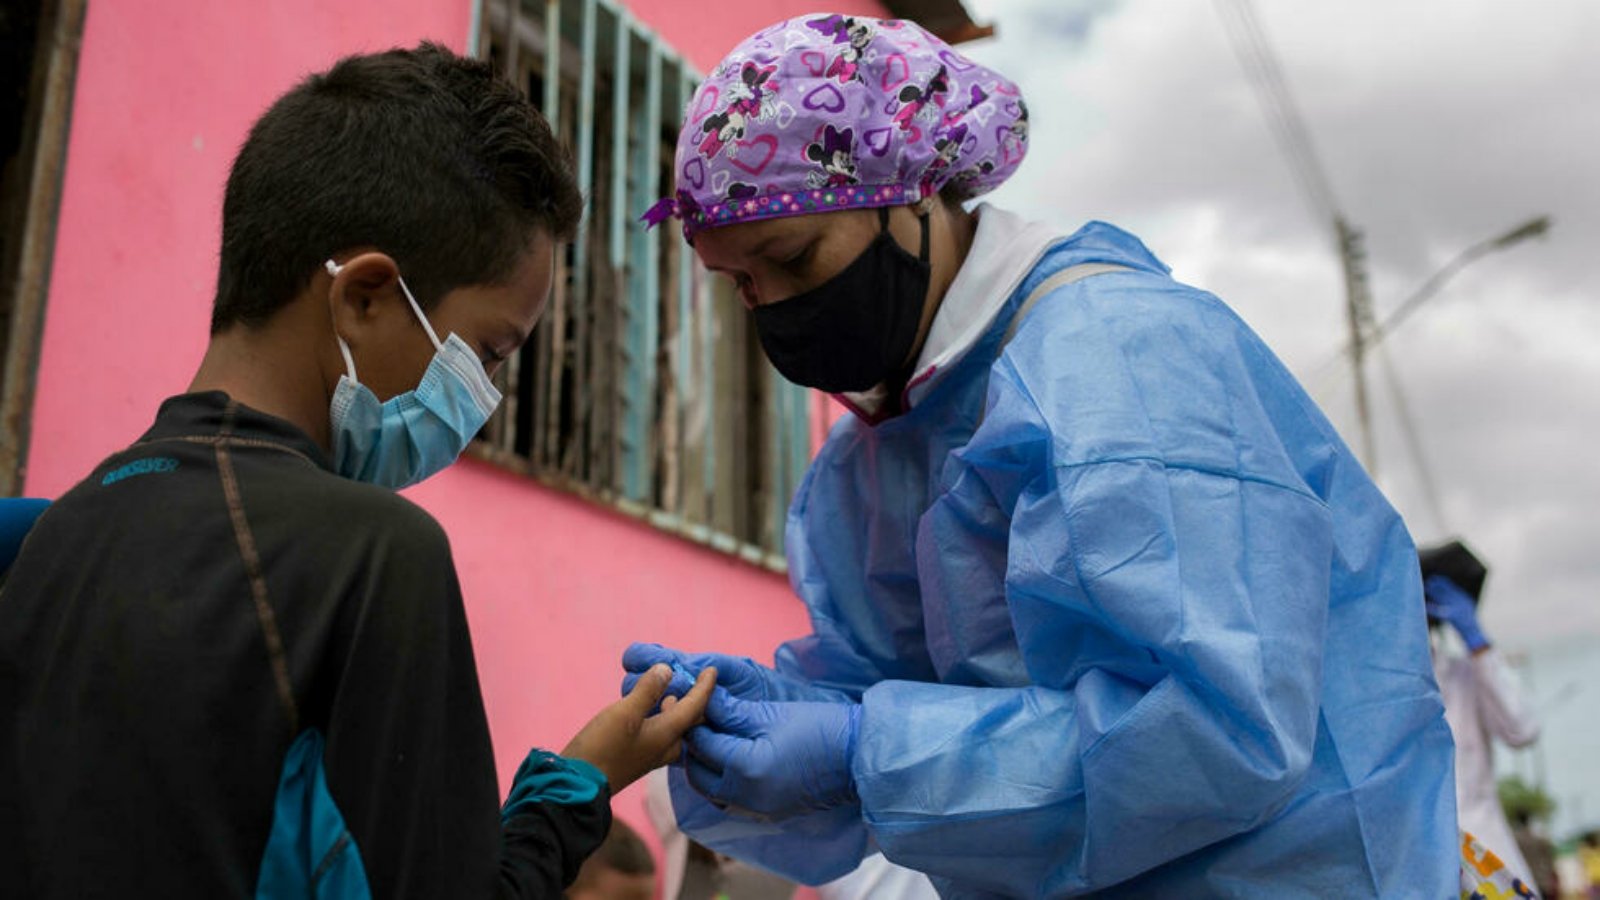 متطوع مع منظمة أطباء بلا حدود يأخذ عينة دم لفحصها للكشف عن الملاريا في مدينة برشلونة، ولاية أنزواتيغوي، فنزويلا.